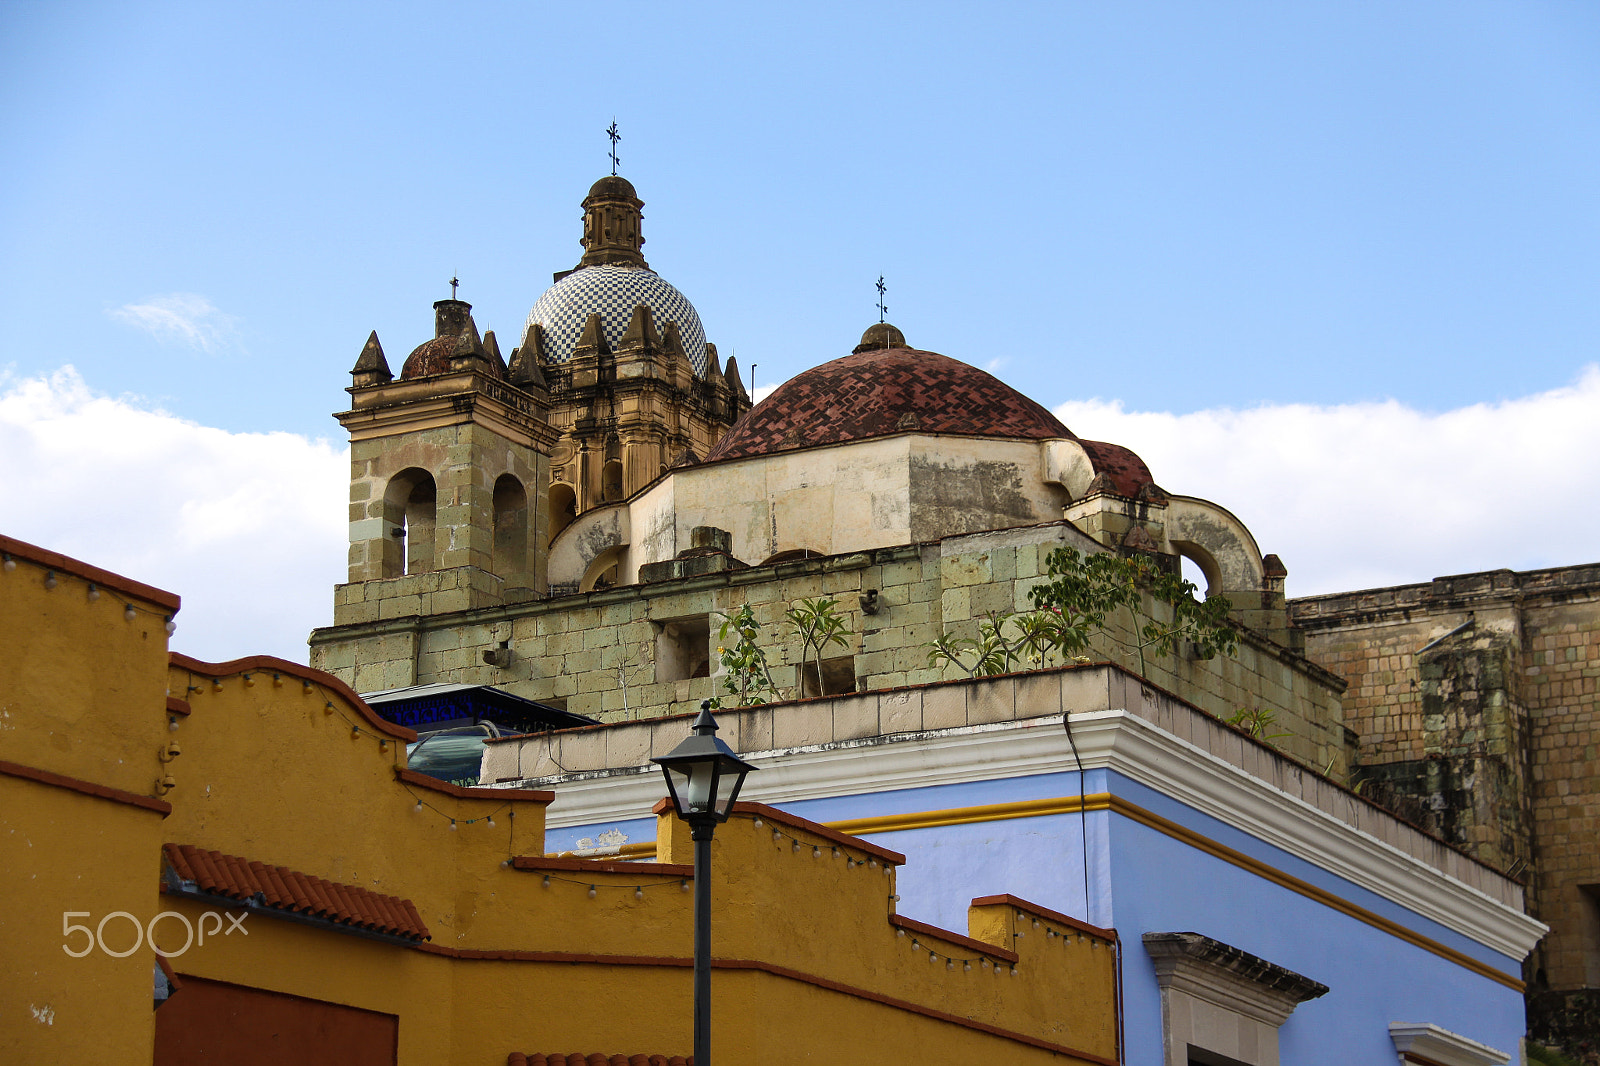 Canon EOS 50D sample photo. Church of santo domingo de guzmán oaxaca mexico photography